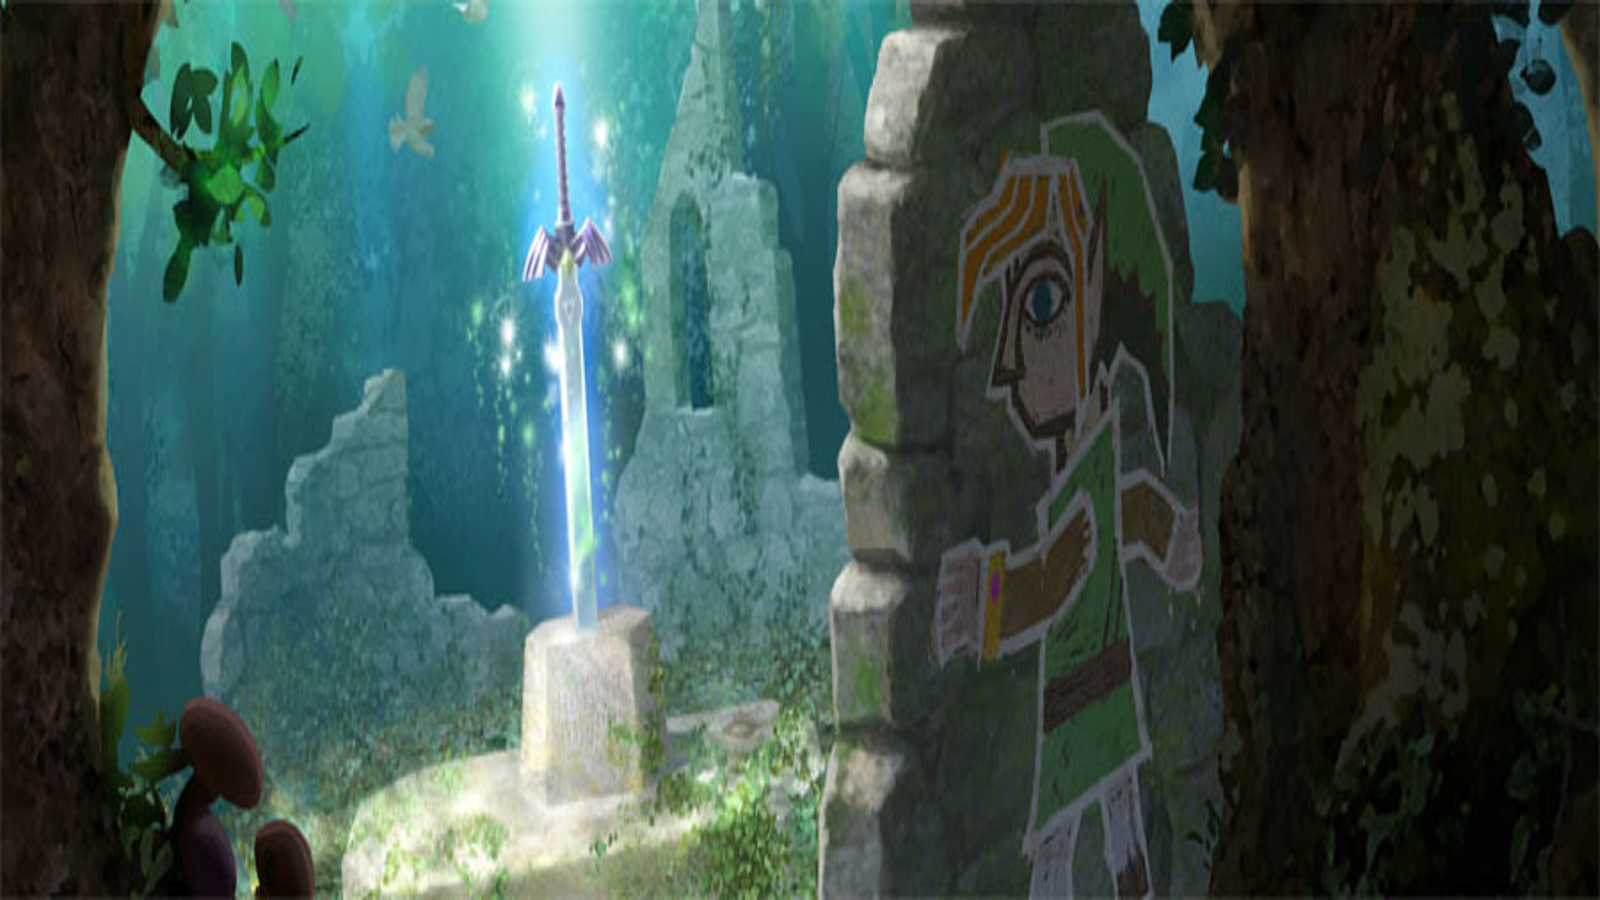 The Legend of Zelda: A Link Between Worlds - Part 09 - The Master Sword! 